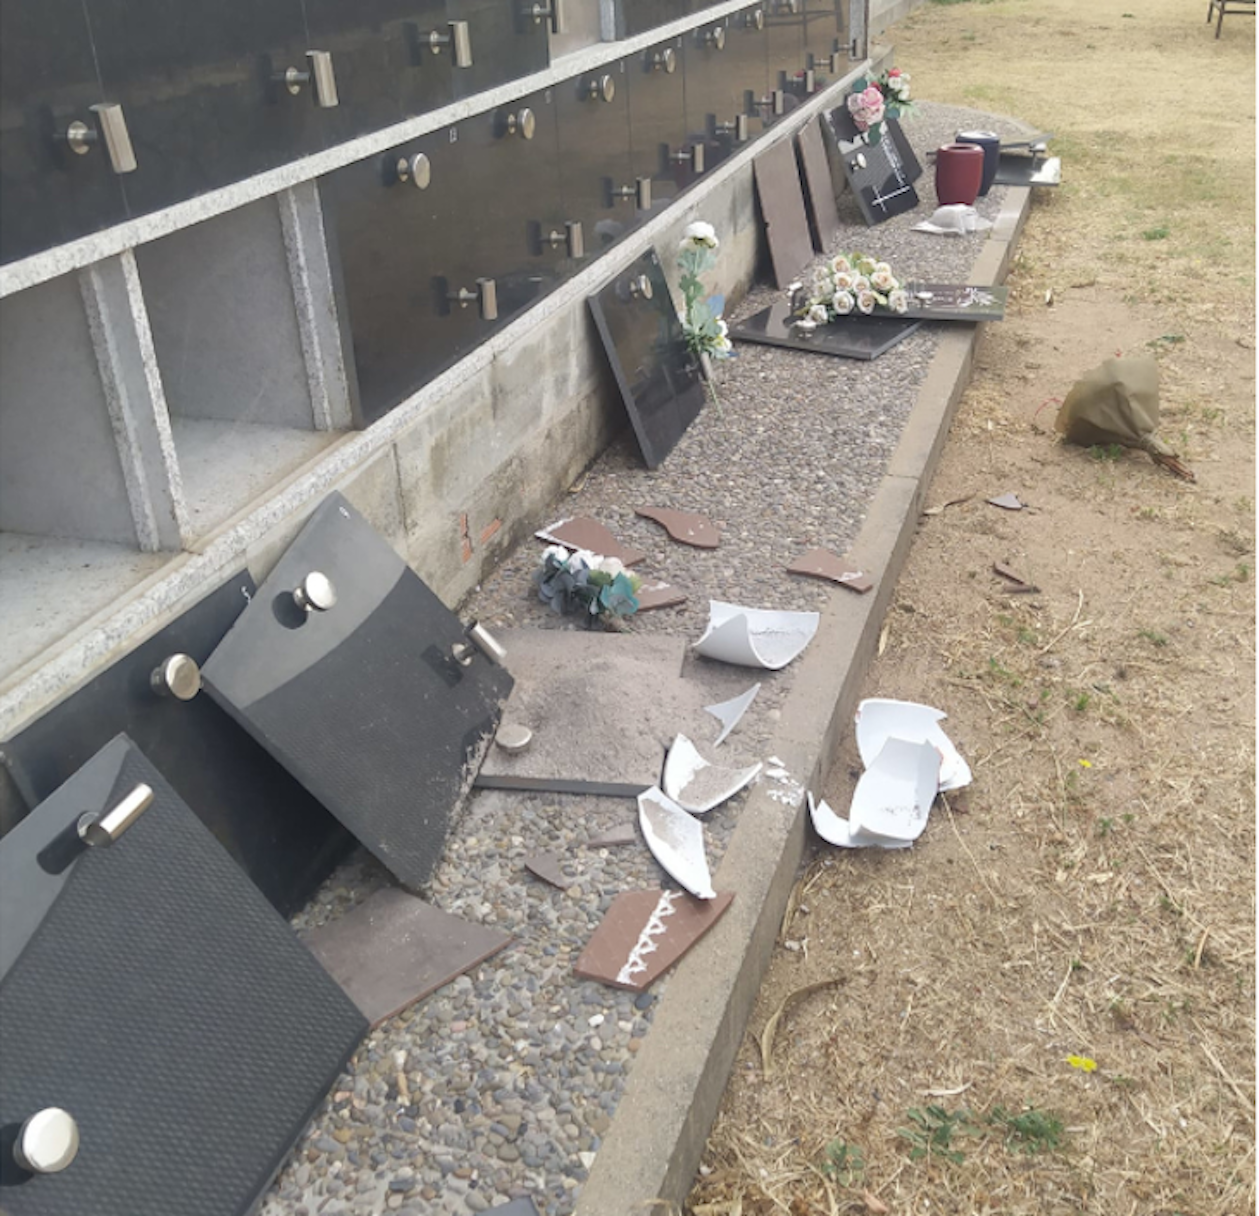 Dos jilipollas abren diez columbarios del cementerio de Arbúcies y tiran las cenizas por el suelo